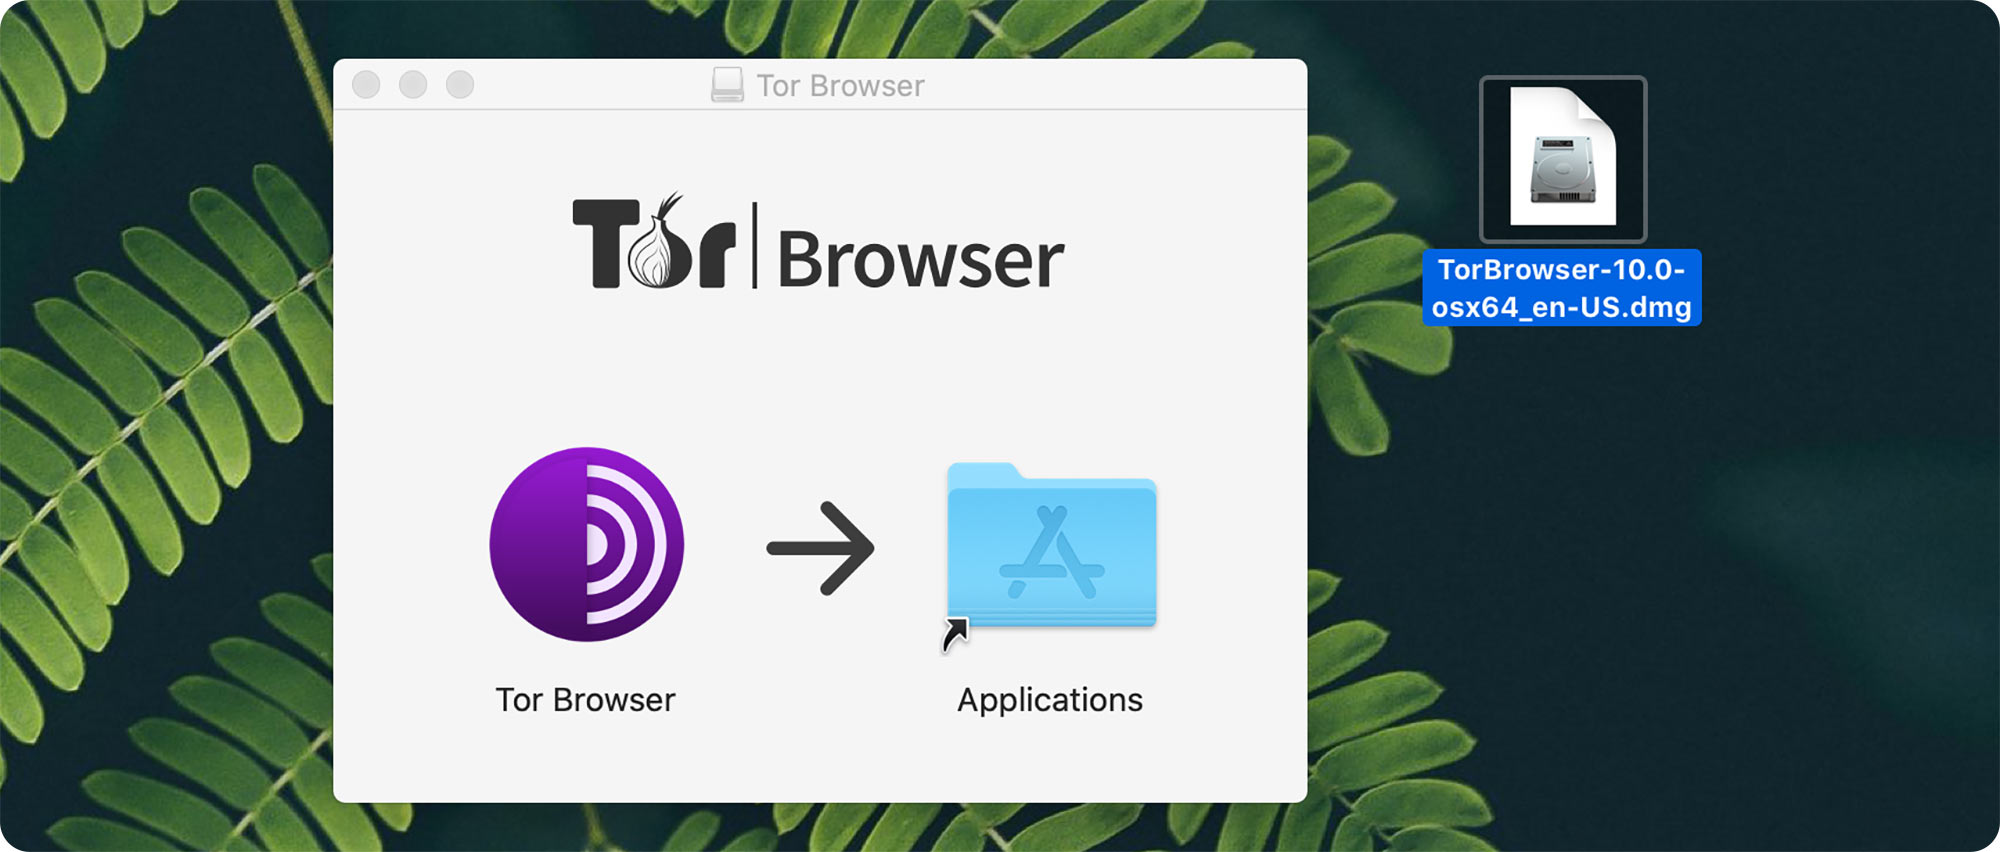 Browser tor for mac gidra скачать тор браузер портабле с официального сайта hidra